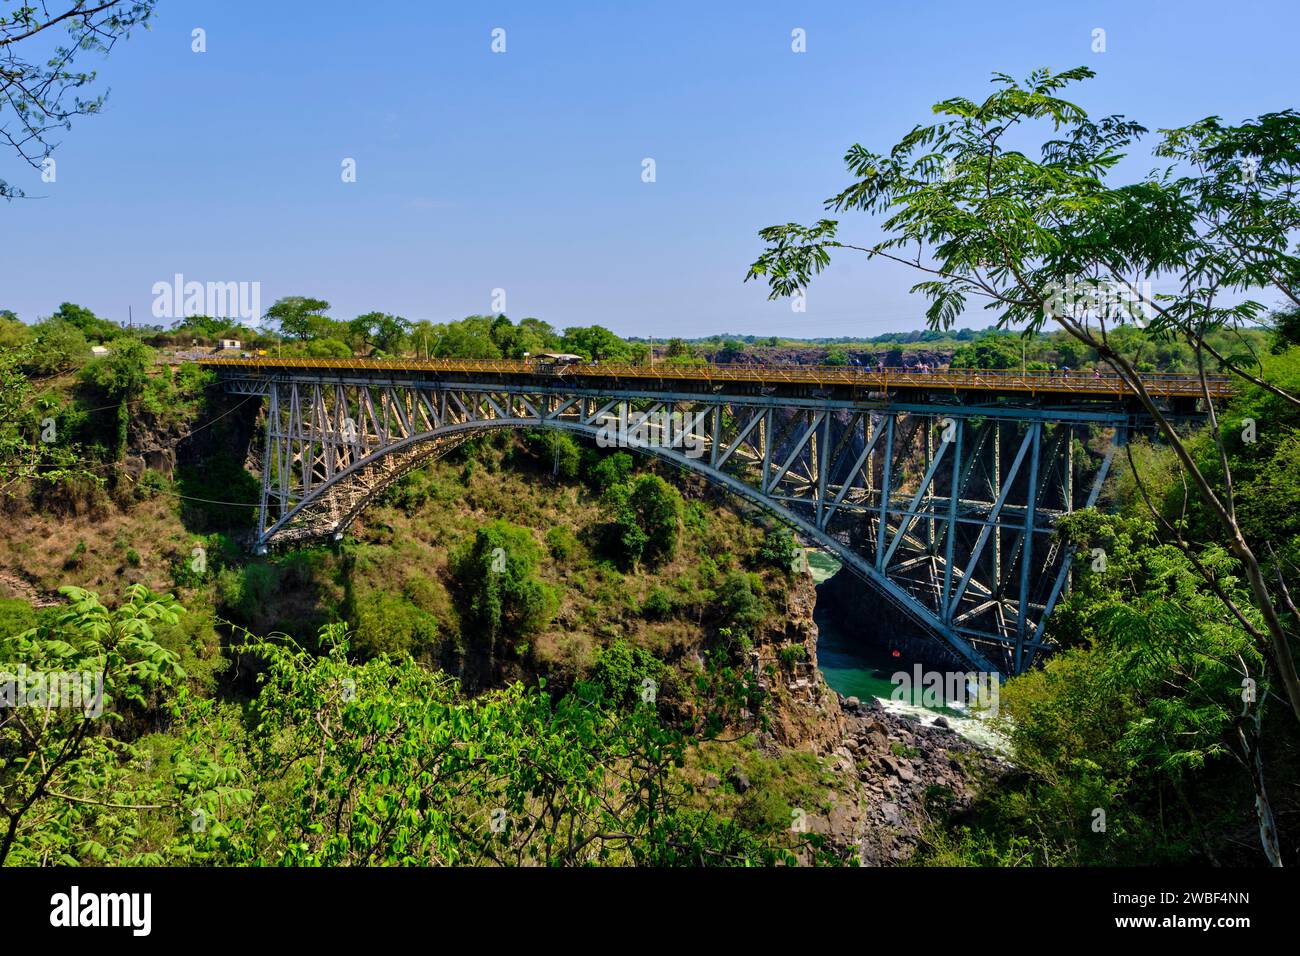 Zimbabwe, Matabeleland North province, Zambezi River at Victoria Falls, listed as UNESCO World Heritage, the border bridge between Zambia and Zimbabwe Stock Photo